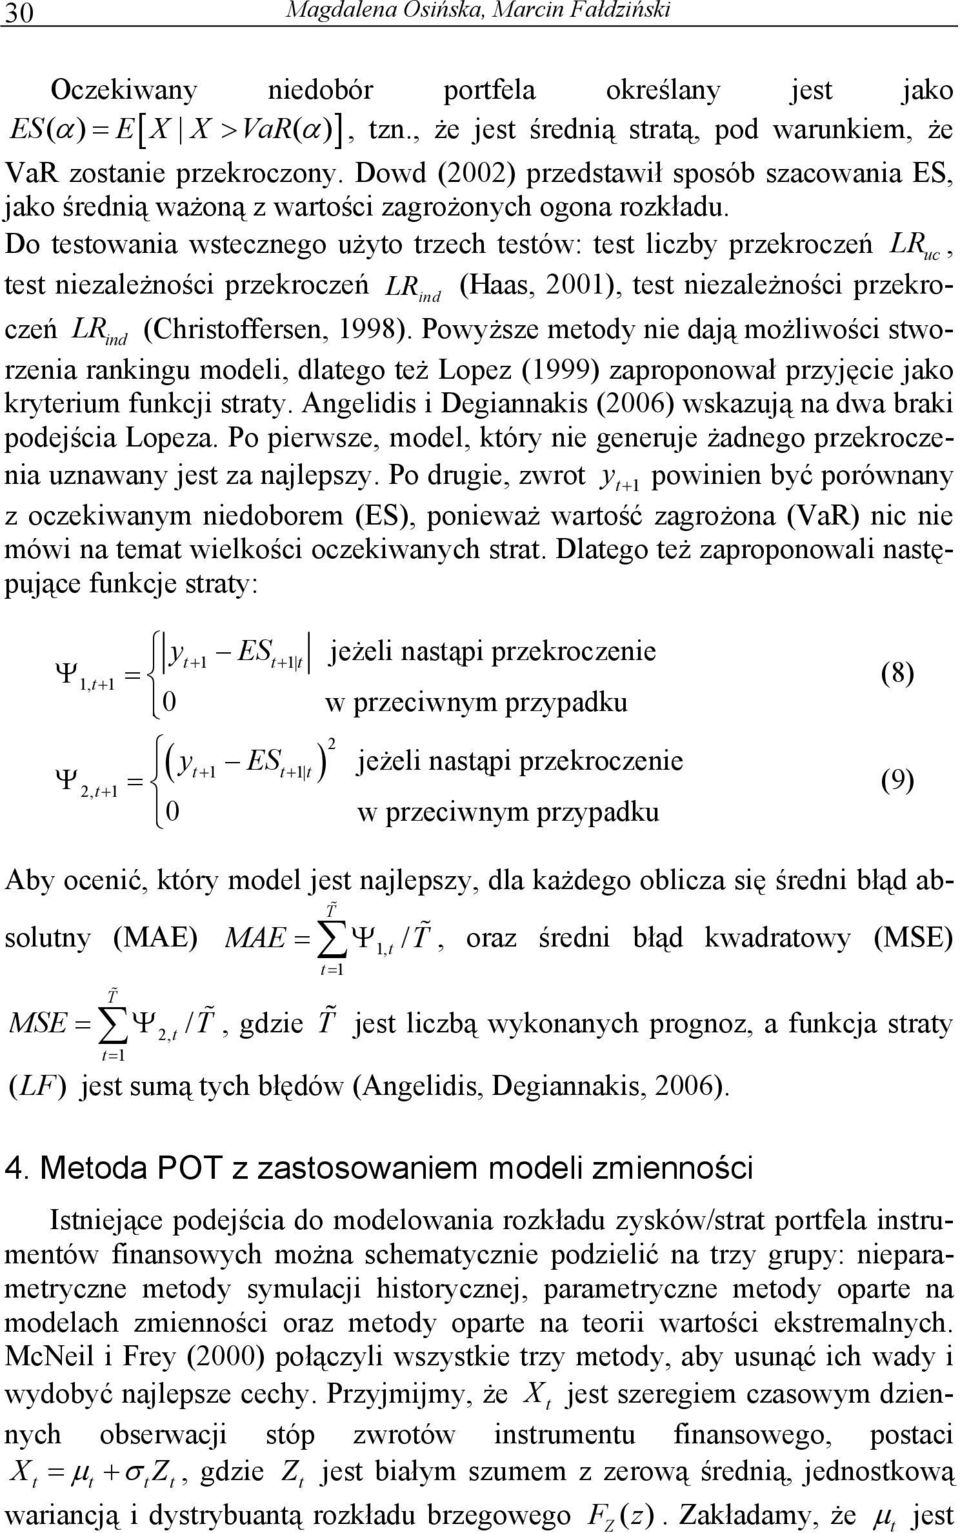 Do esowania wsecznego żyo rzech esów: es liczby przekroczeń LR c es niezależności przekroczeń LR ind (Haas 2001) es niezależności przekroczeń LR ind (Chrisoffersen 1998).